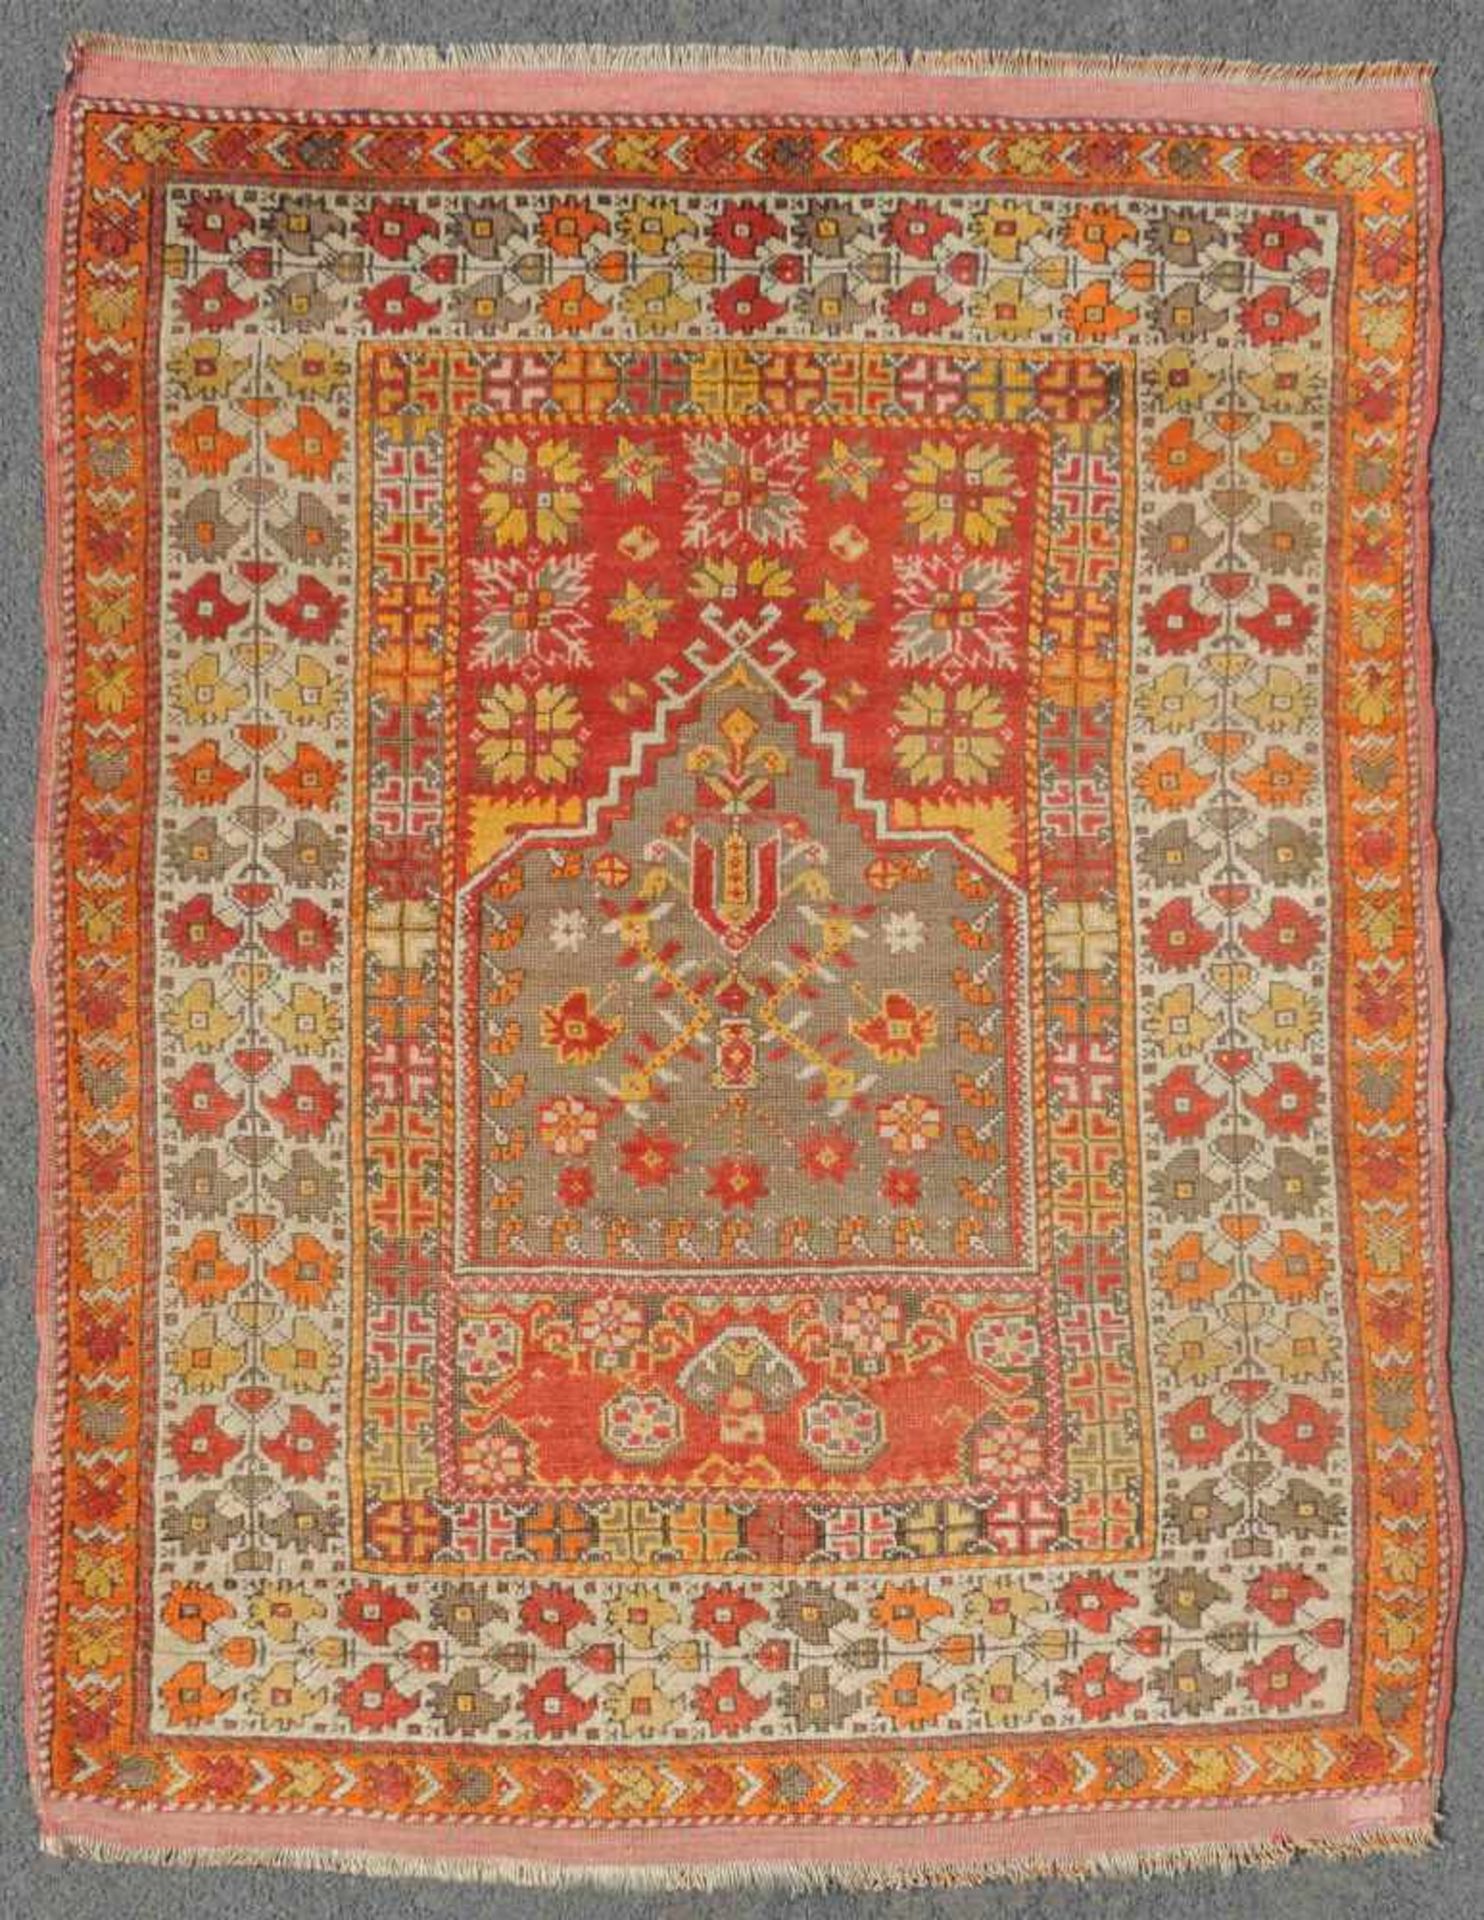 Mucur Gebetsteppich. Anatolien. Türkei. Antik, um 1870. 155 cm x 114 cm. Handgeknüpft. Wolle auf